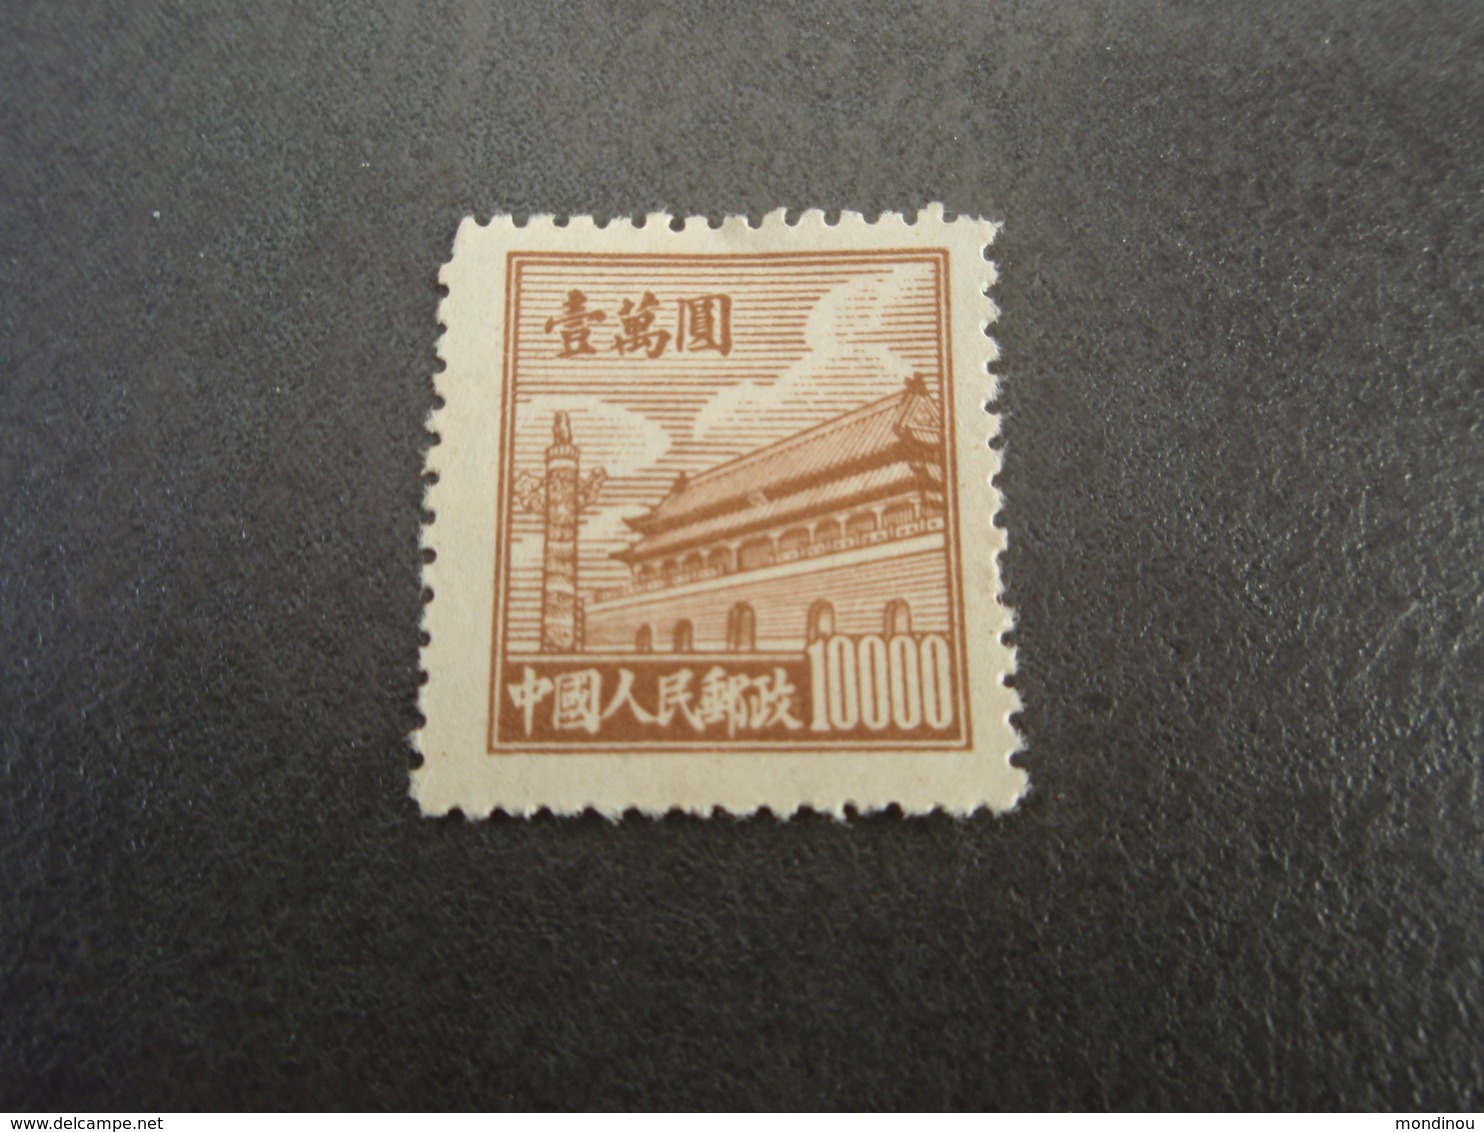 Timbre Chine Porte De La Paix Céleste 10000$ De 1950, Non Oblitéré - Unused Stamps